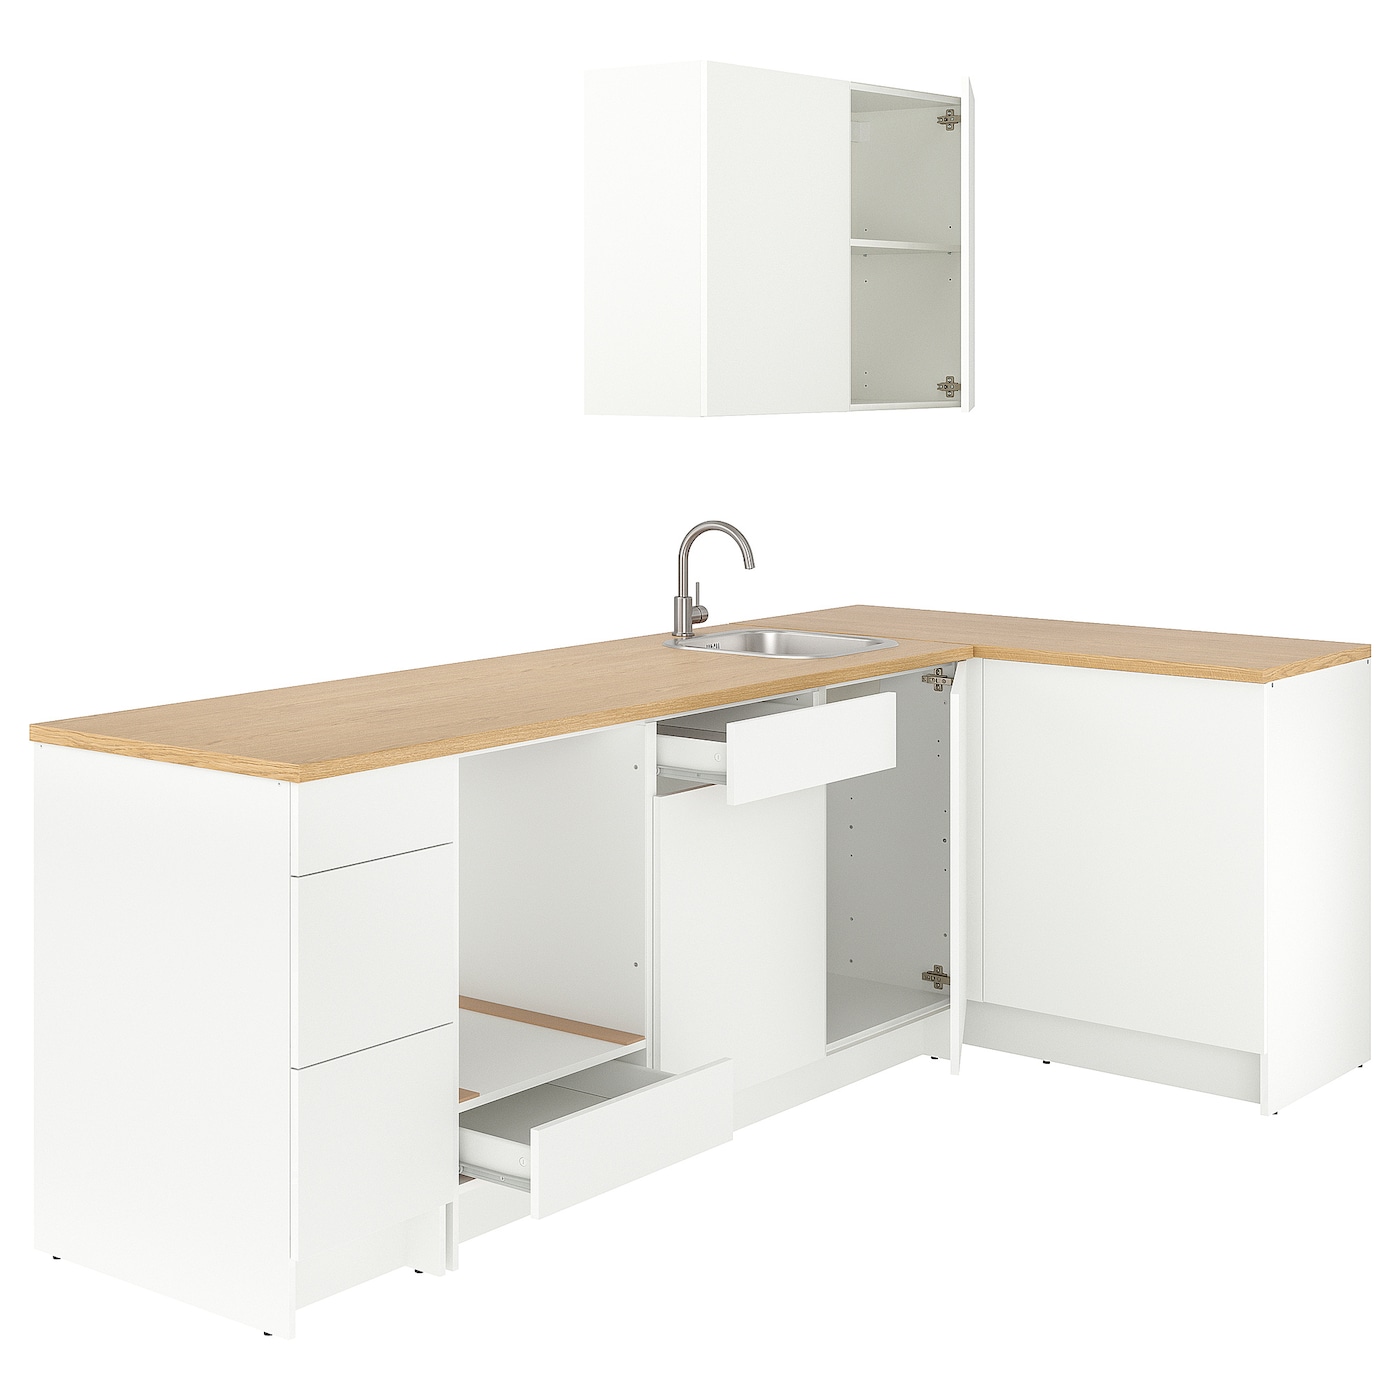 Угловая кухонная комбинация - IKEA KNOXHULT/ КНОКСХУЛЬТ ИКЕА, 285x122x220 см, белый